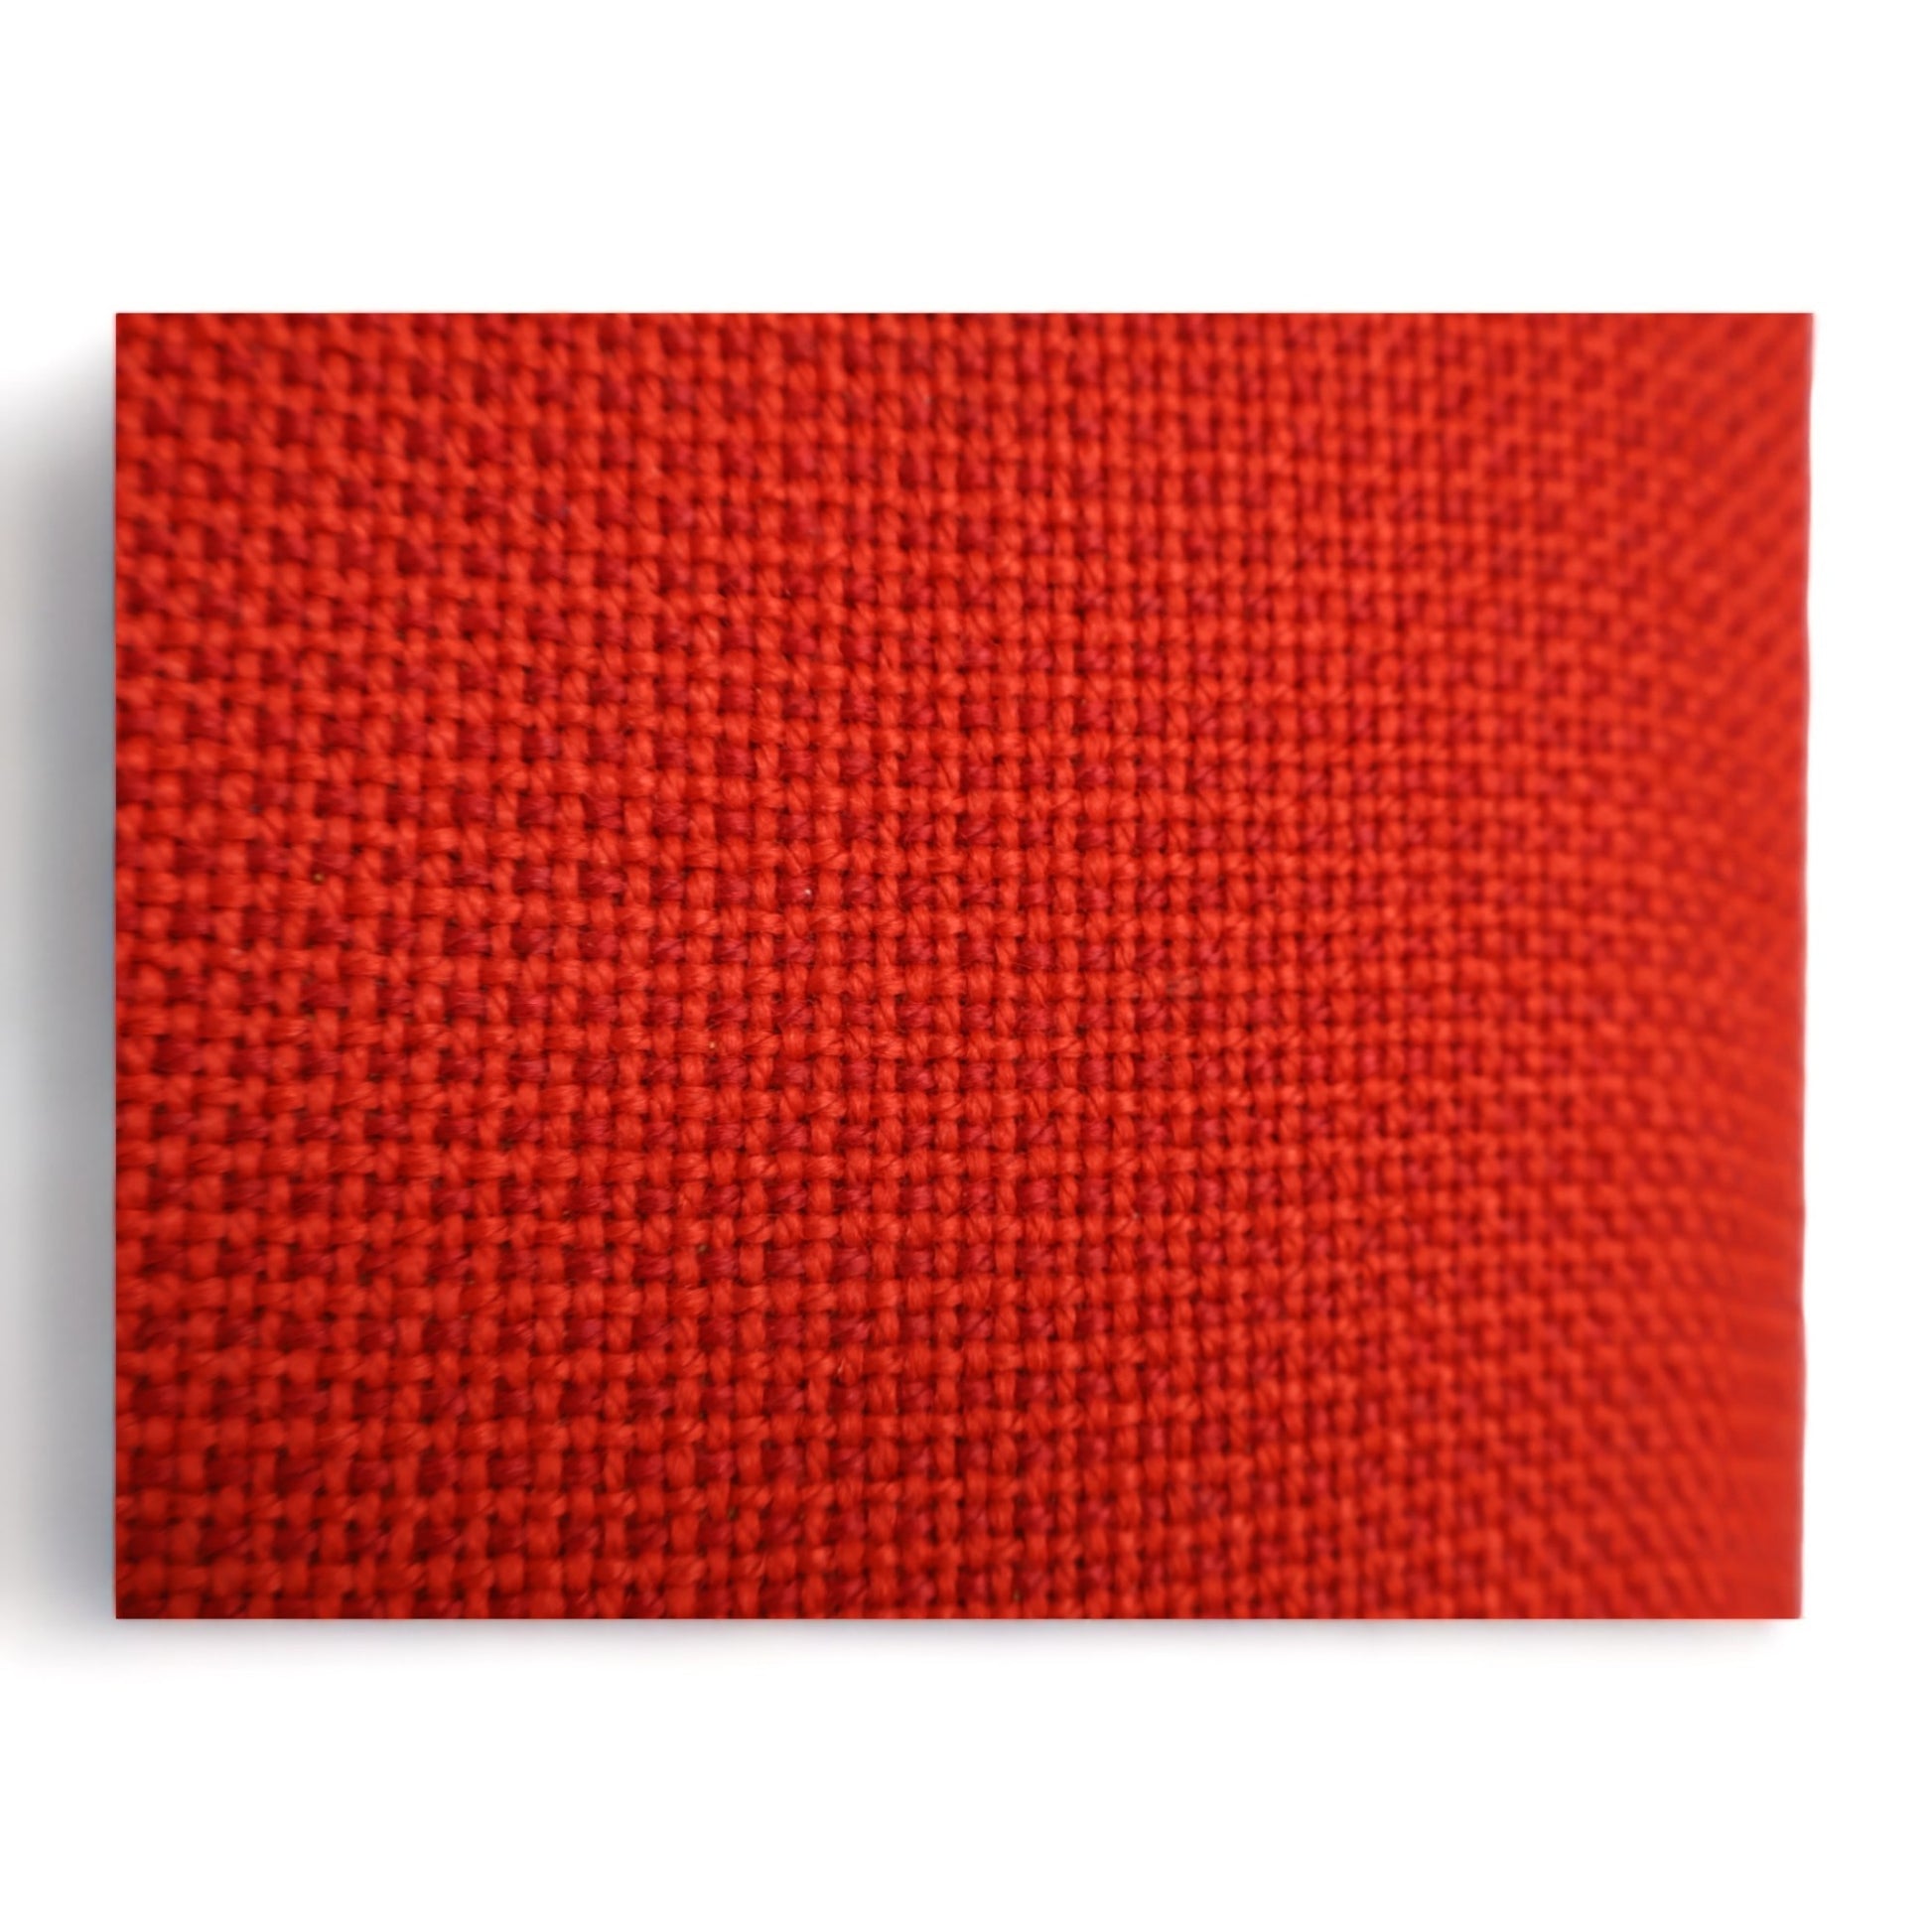 Nyrenset | Rød Fora Form Senso sofa med åpen ende og høy rygg